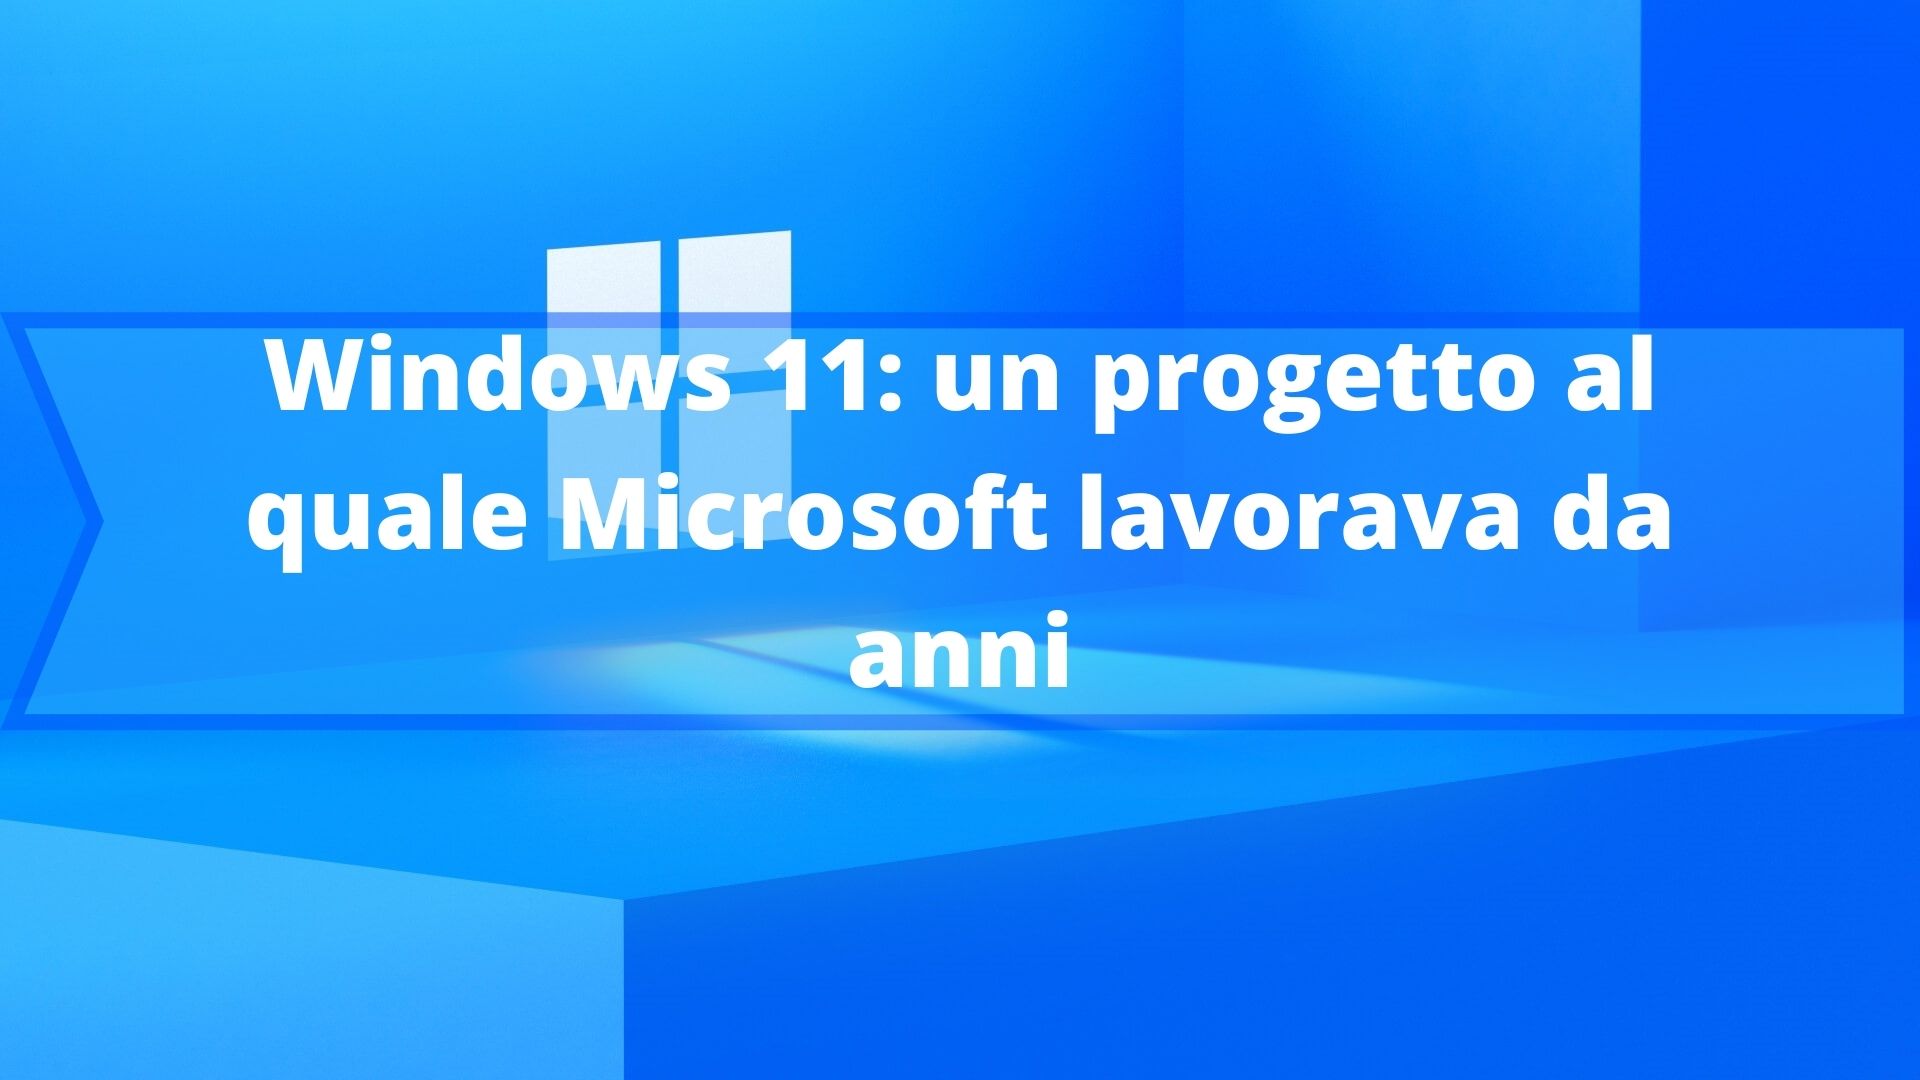 Windows 11: un progetto al quale Microsoft lavorava da anni